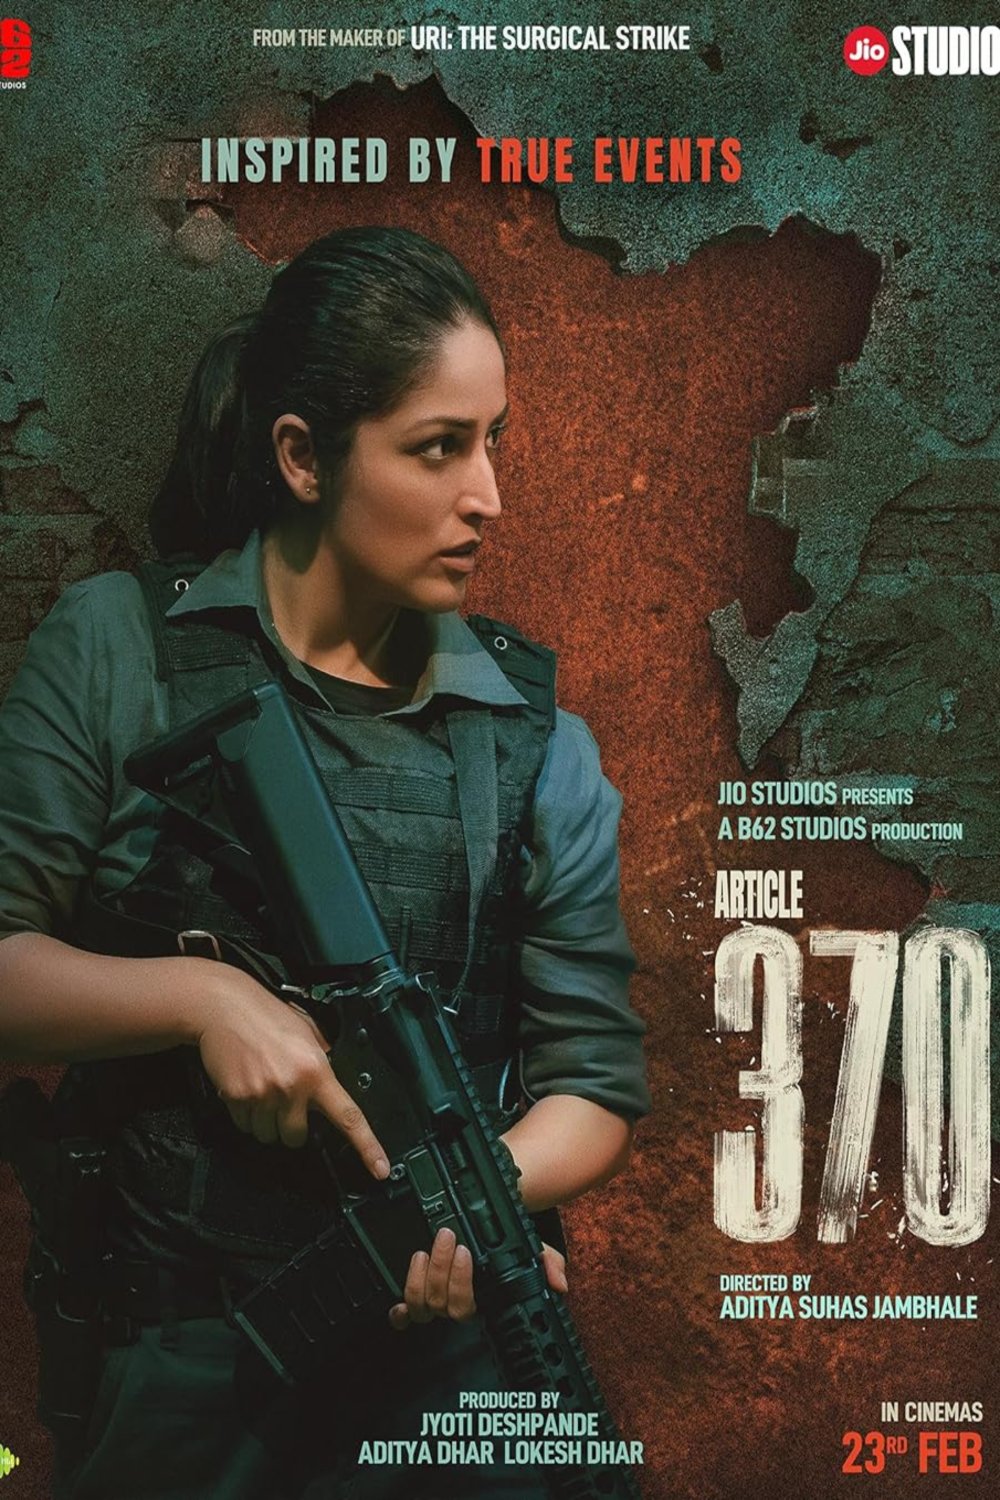 L'affiche originale du film Article 370 en Hindi